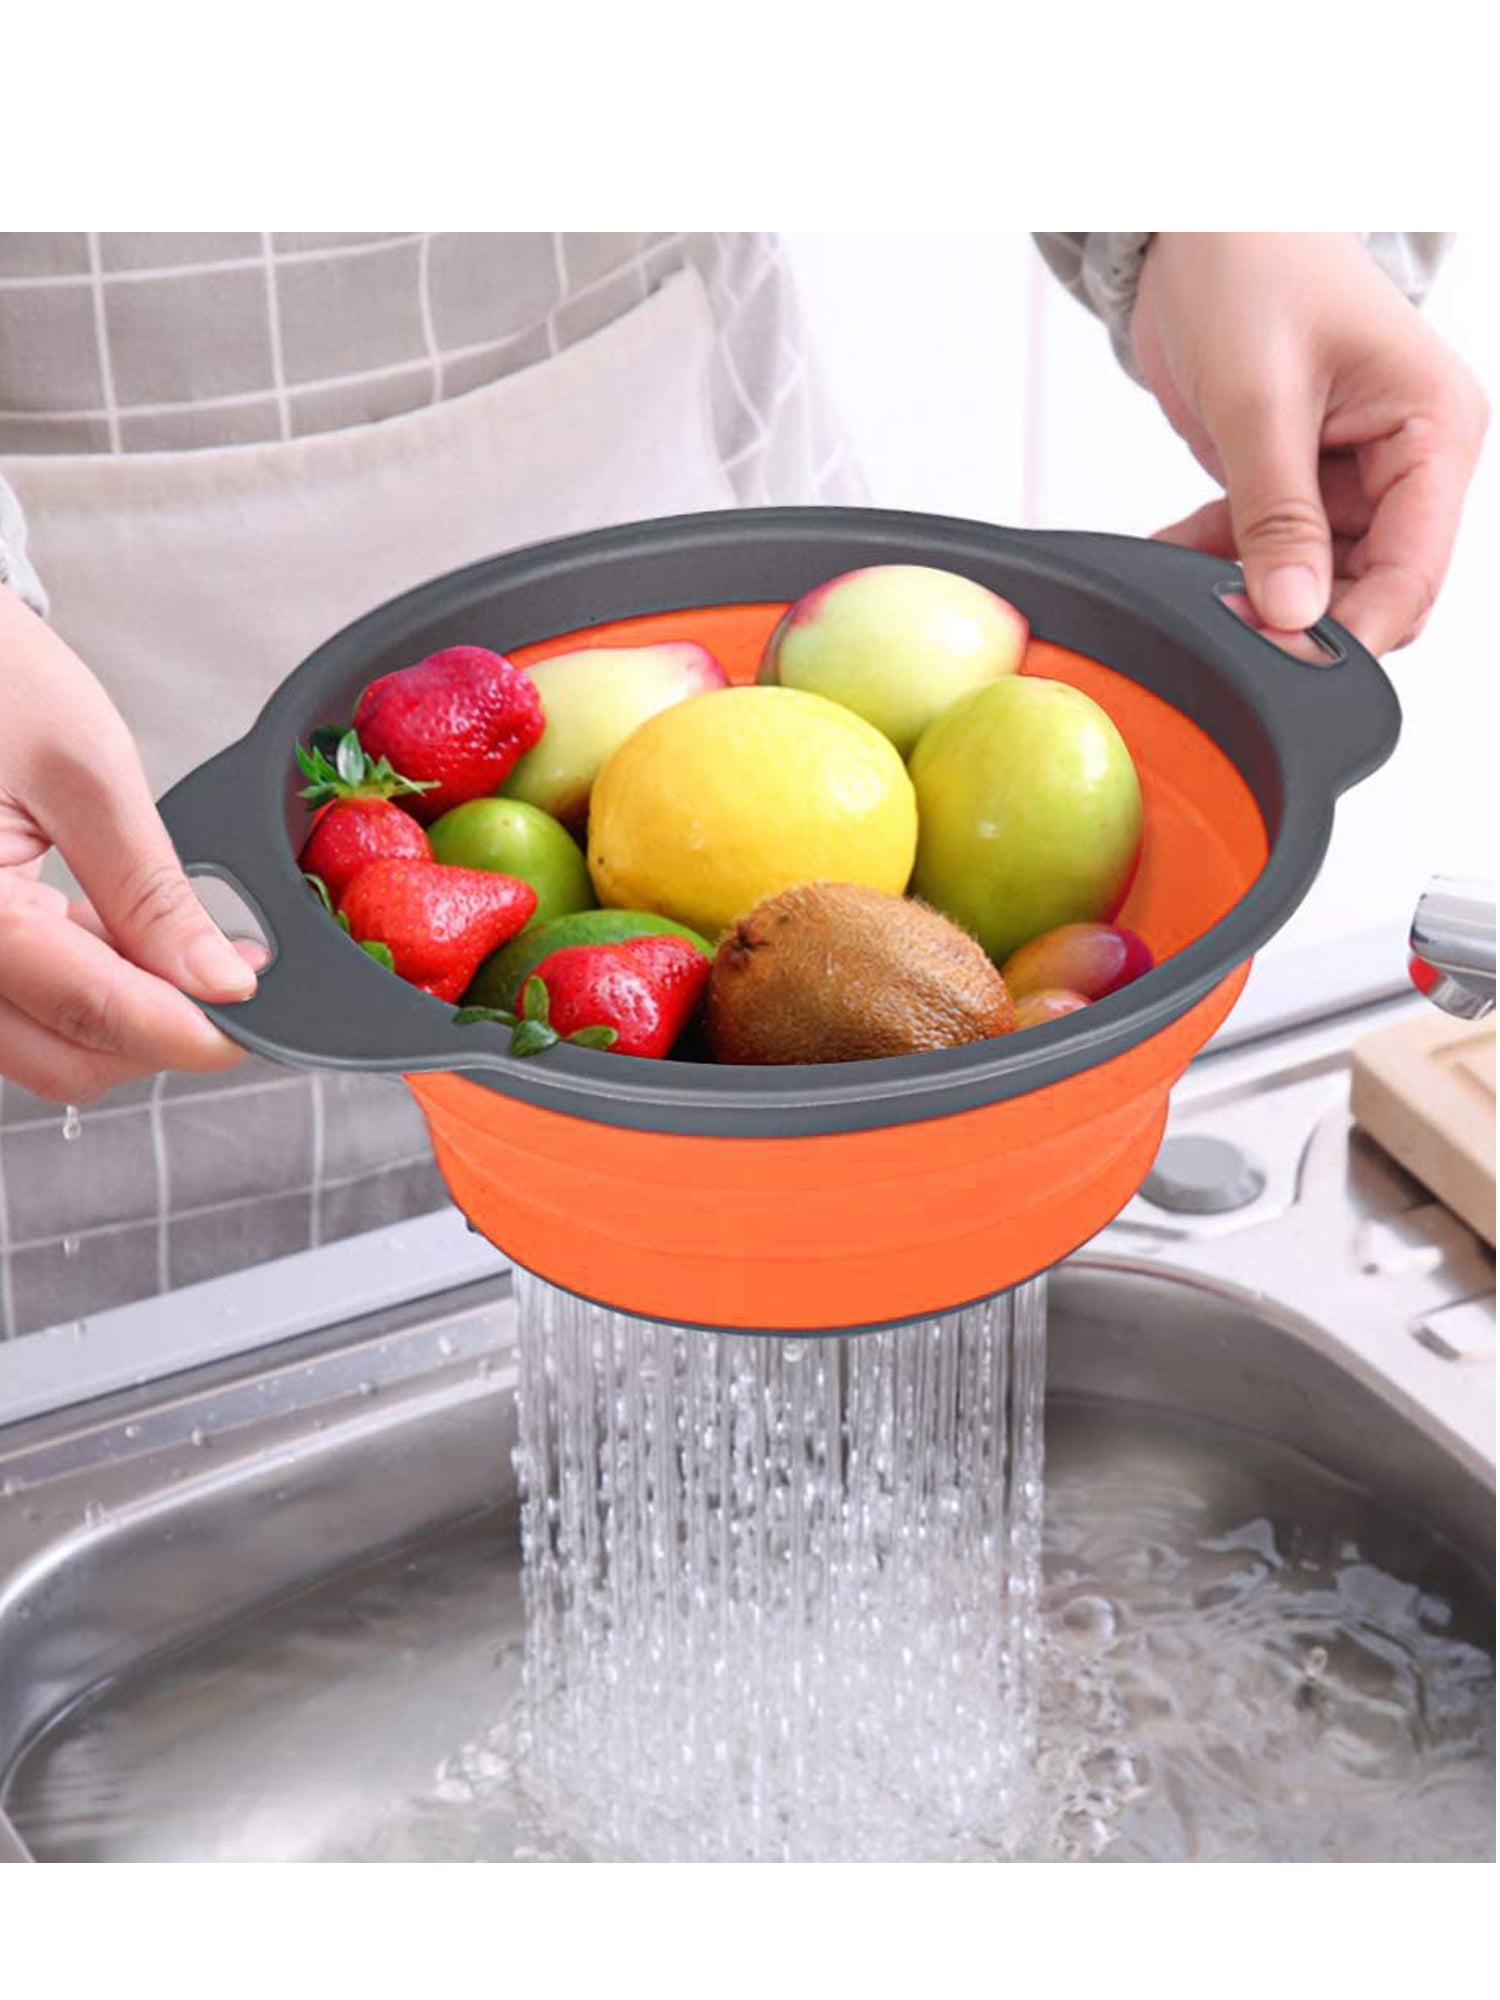 Smart Home Essentials for Living 4pc Basket and Colander Set Orange 